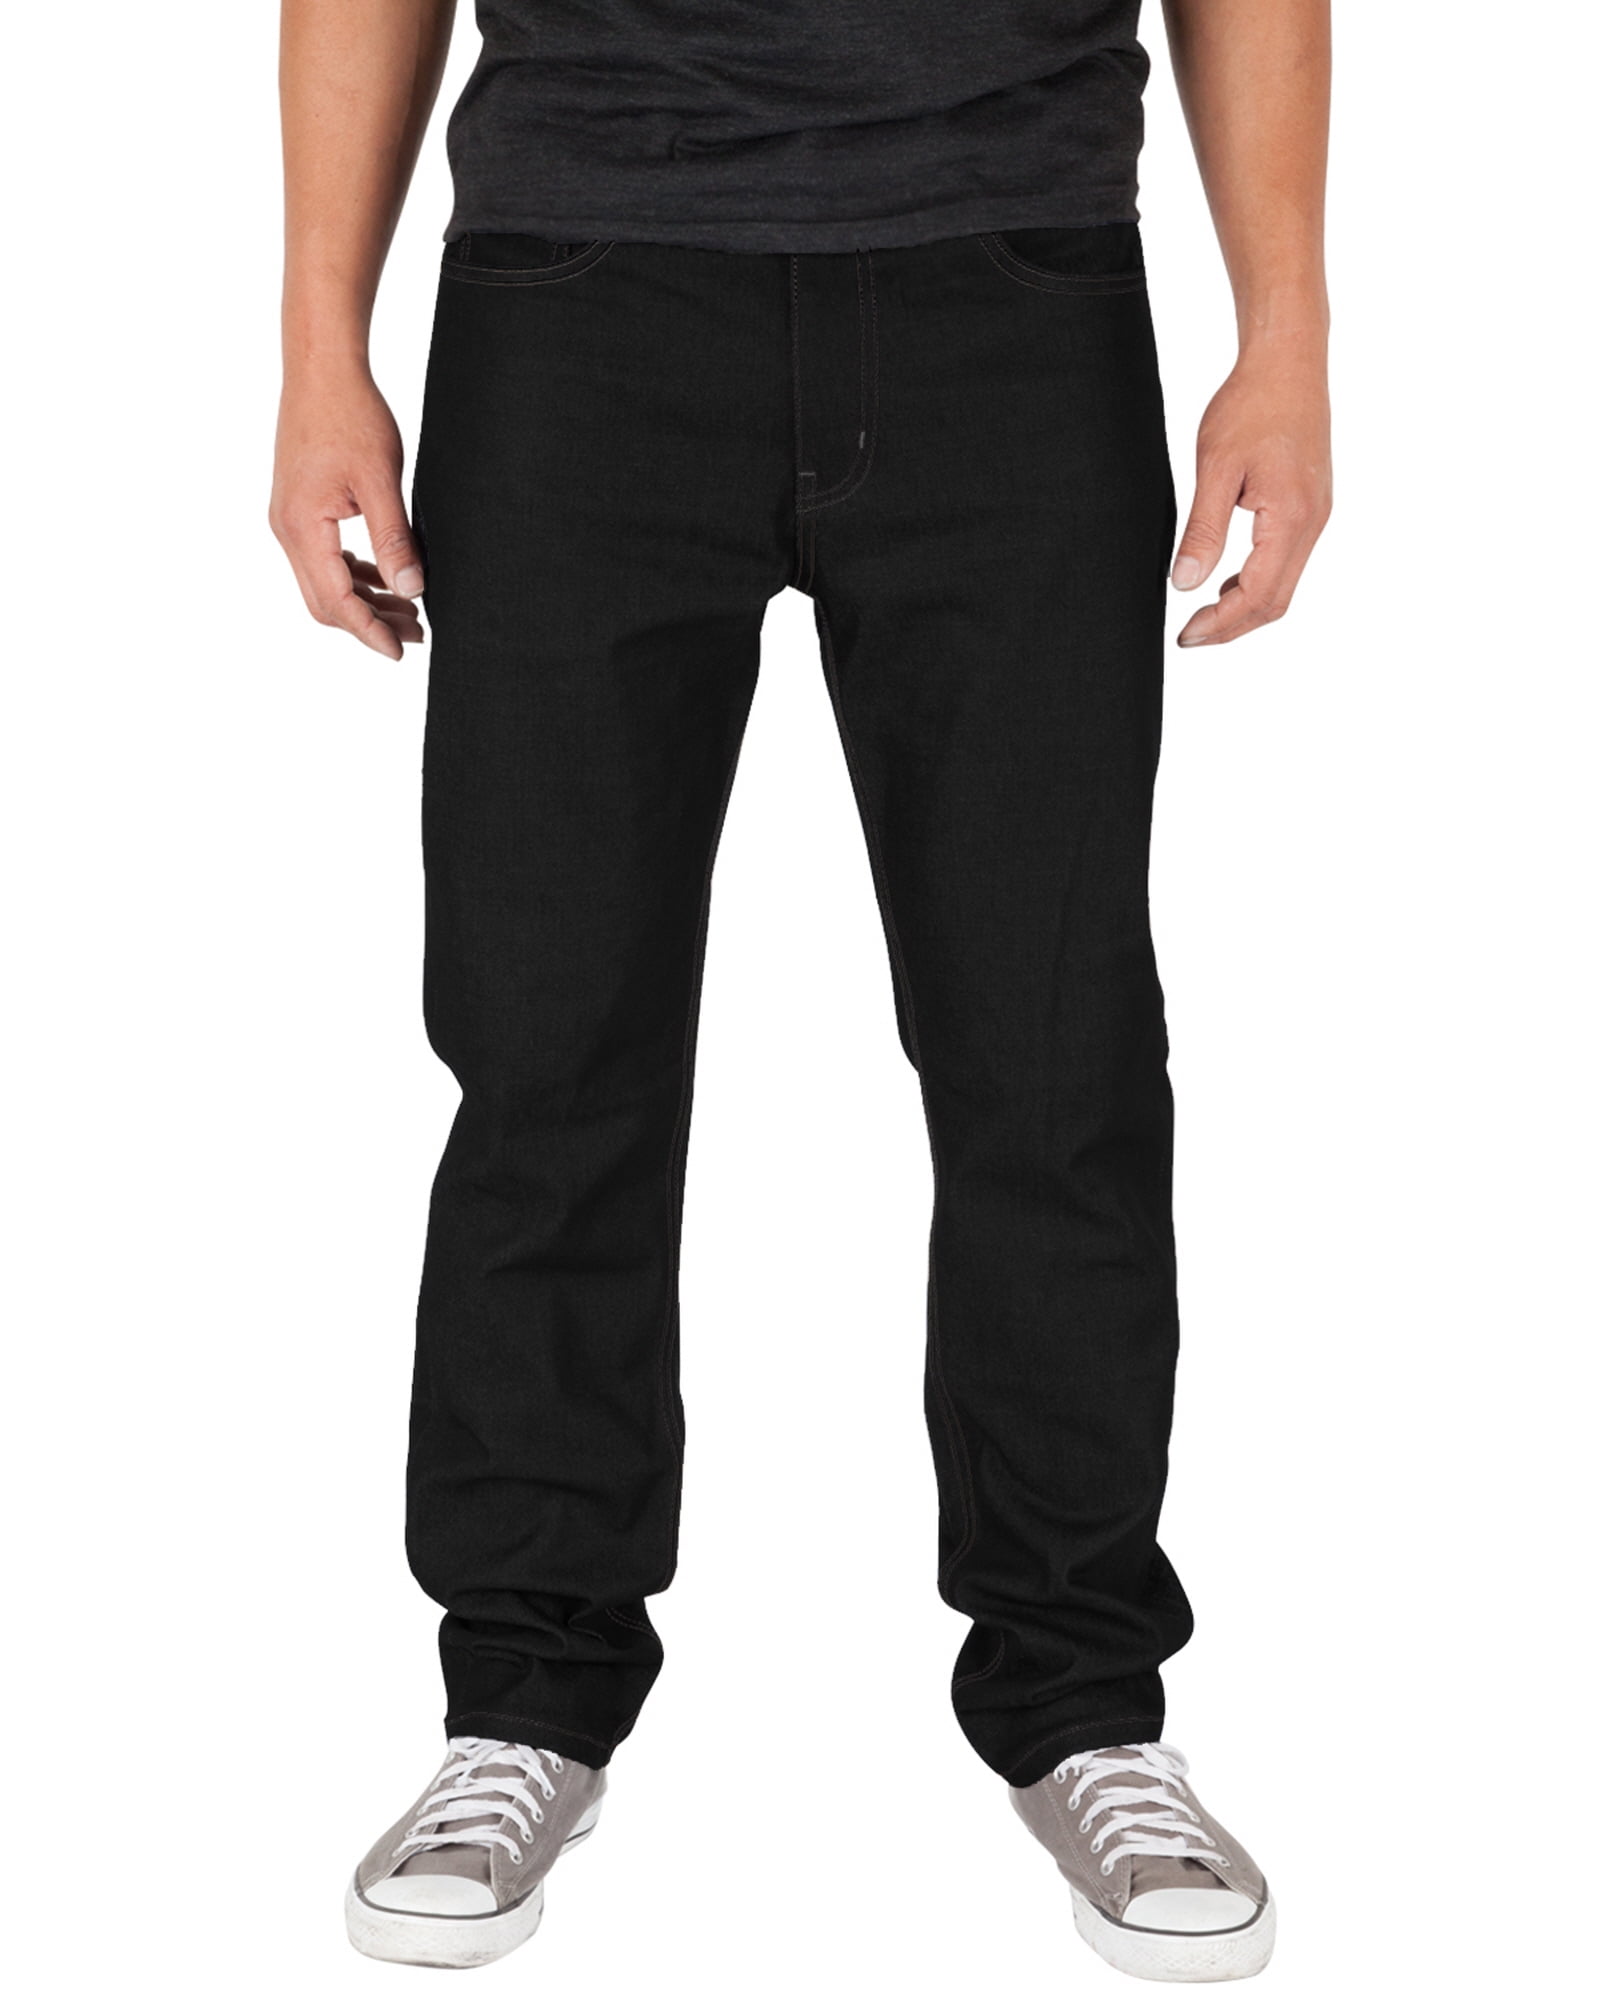 BLACK Men's Joggers A/JEANS Denim Pant's Comfy Elastic Cuffs Stretch  HD1506N 